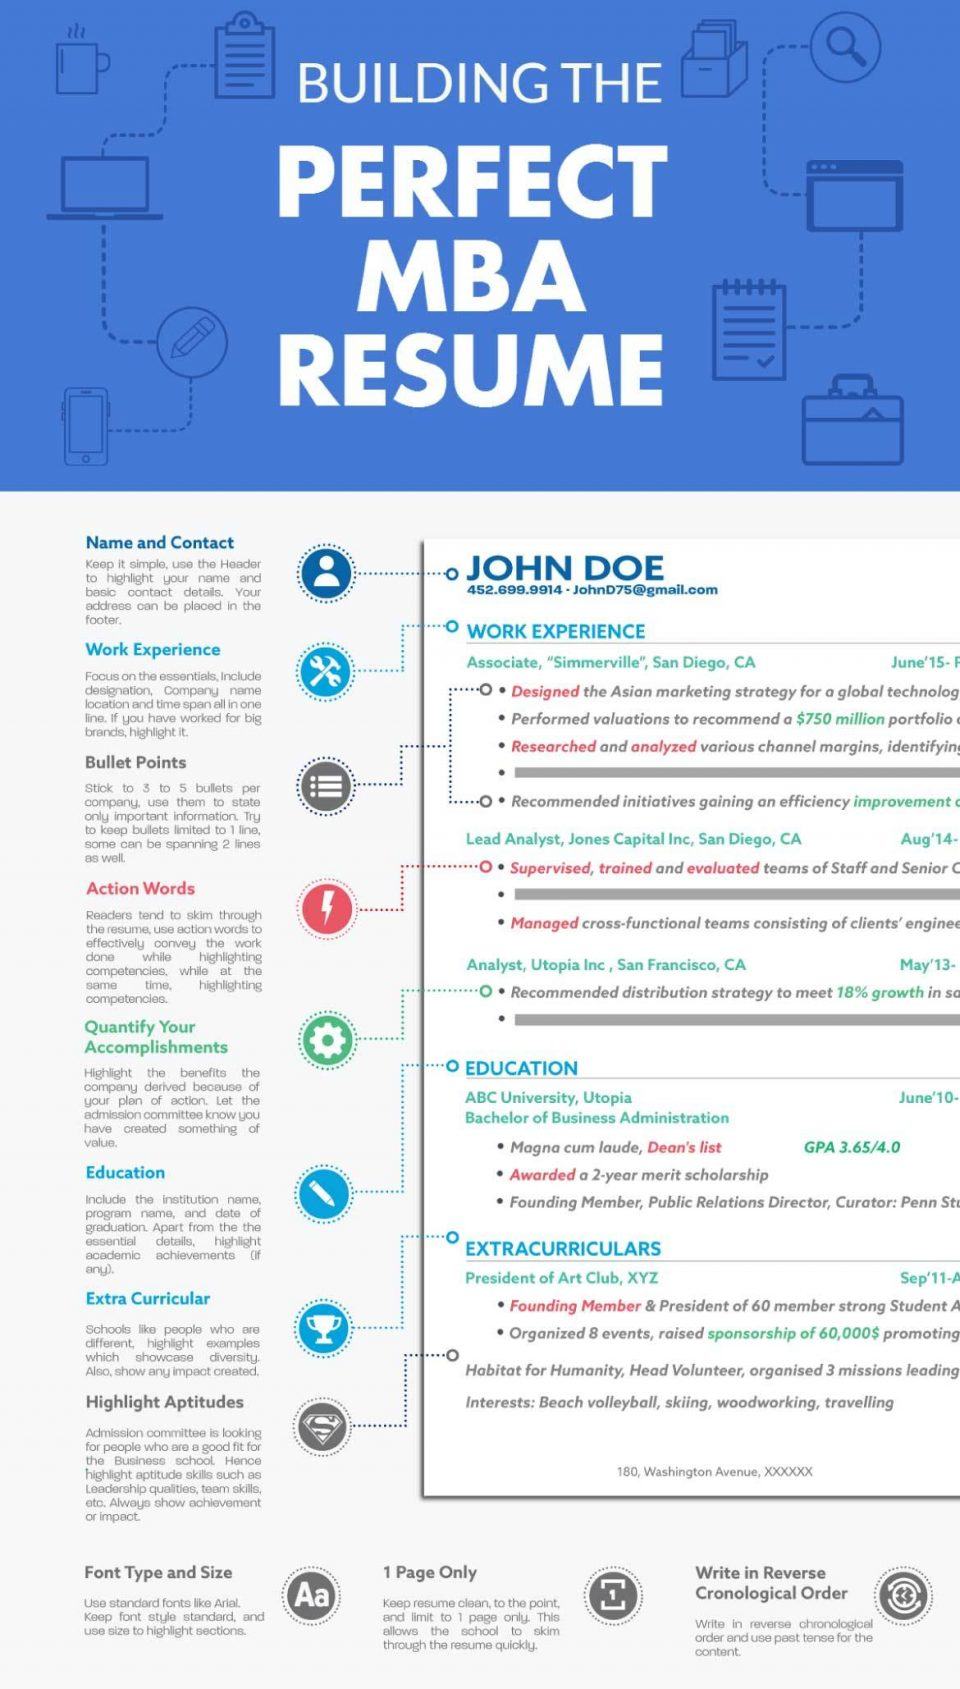 Infographic Resume / CV on Behance